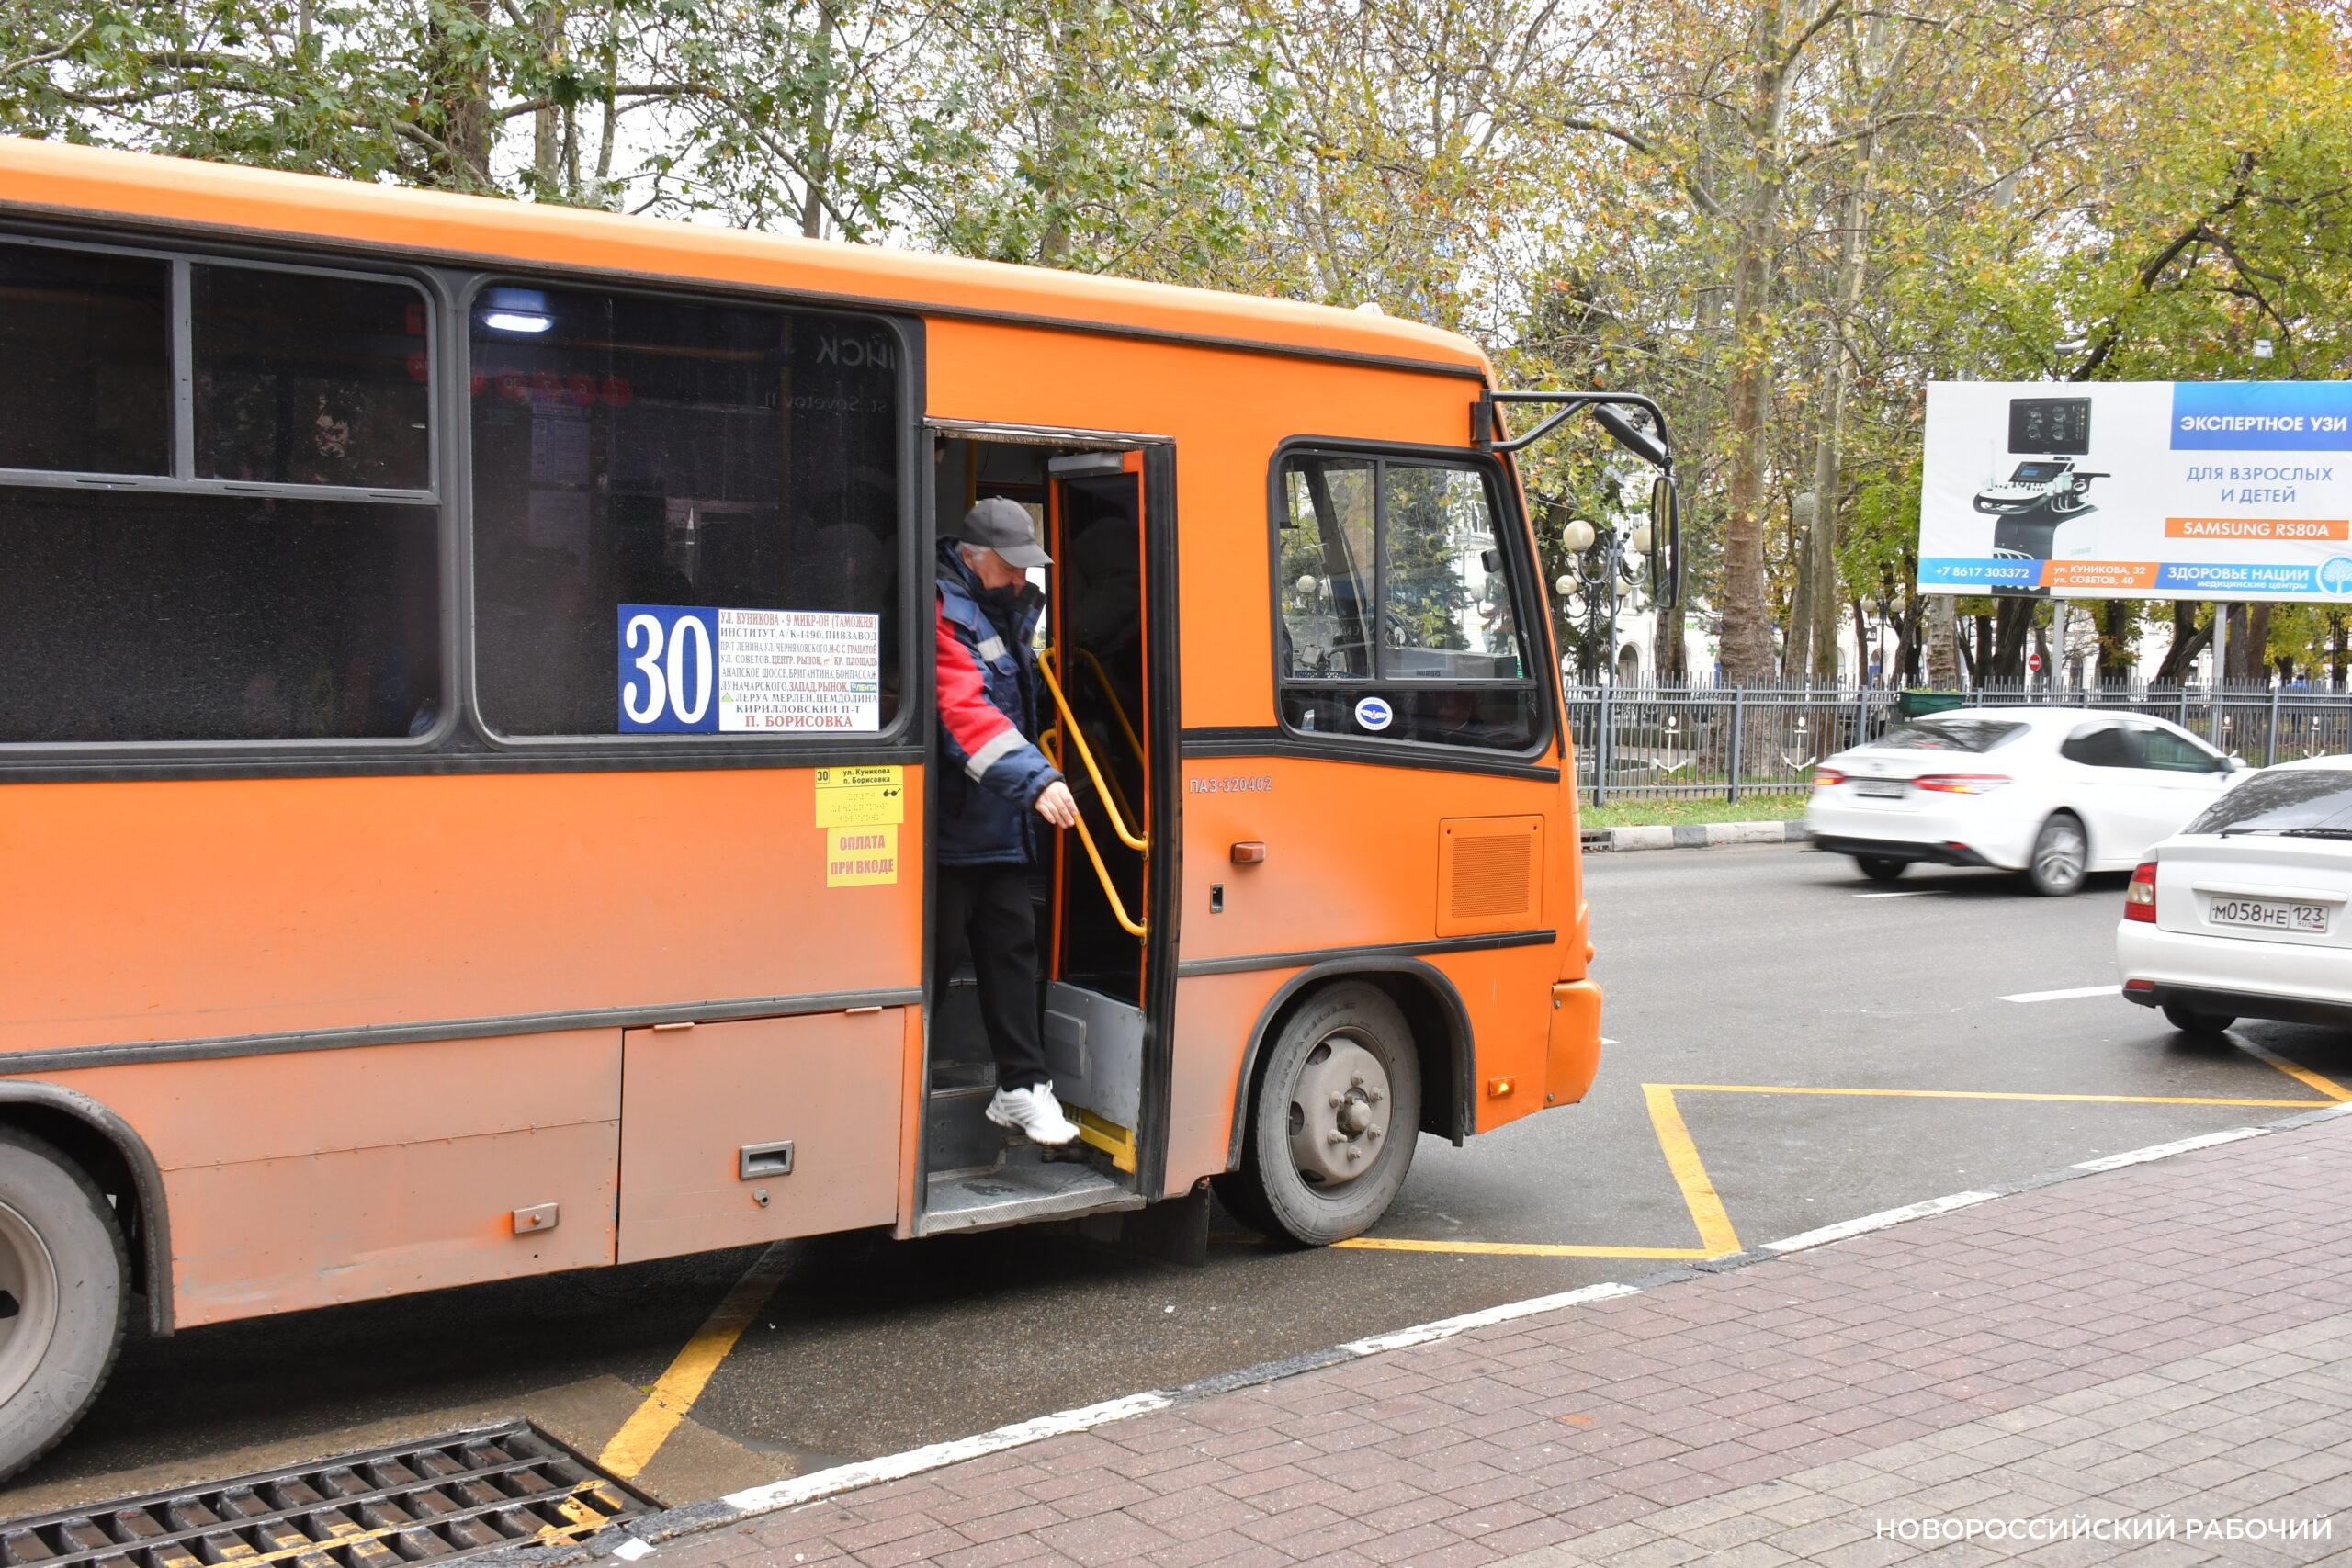 Стоимость проезда в общественном транспорте Новороссийска остается неизменной. Прогнозов о повышении — нет